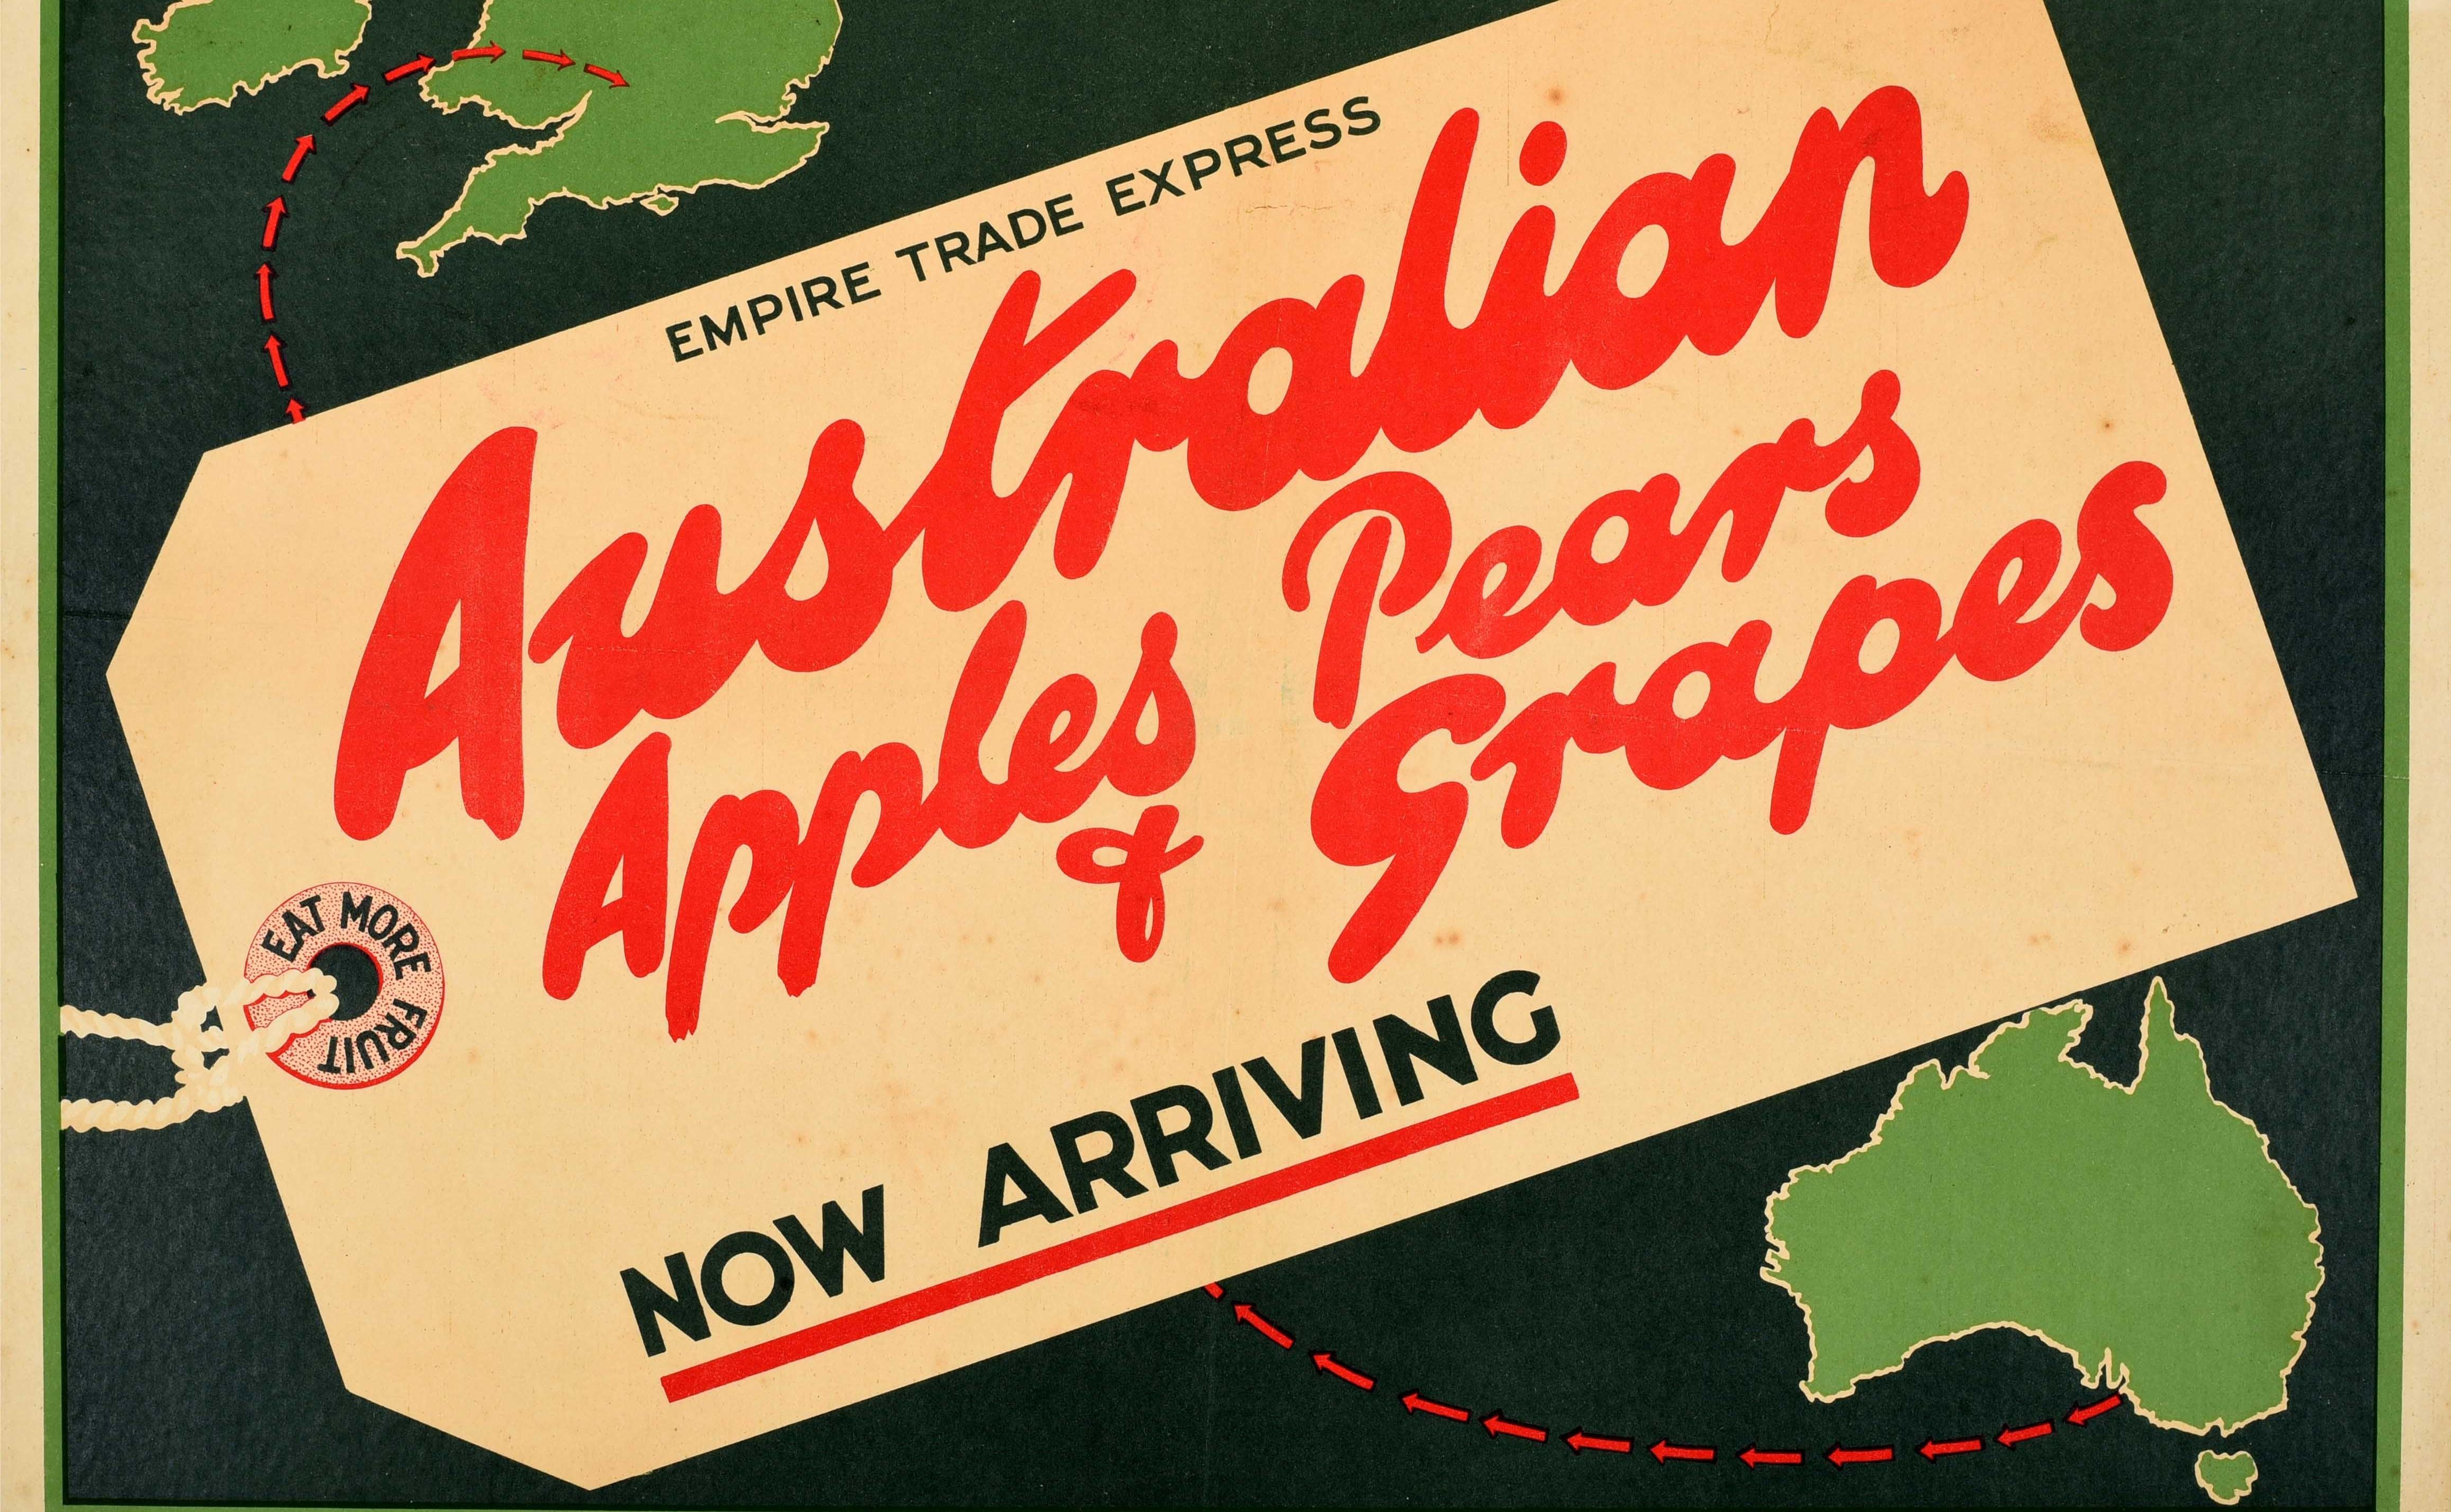 Original-Werbeplakat für Lebensmittel - Australian Apples Pears and Grapes Now arriving - mit einem großartigen Design, das ein Empire Trade Express-Gepäcketikett mit der Aufschrift Eat More Fruit um das Schnurloch herum zeigt, vor einem